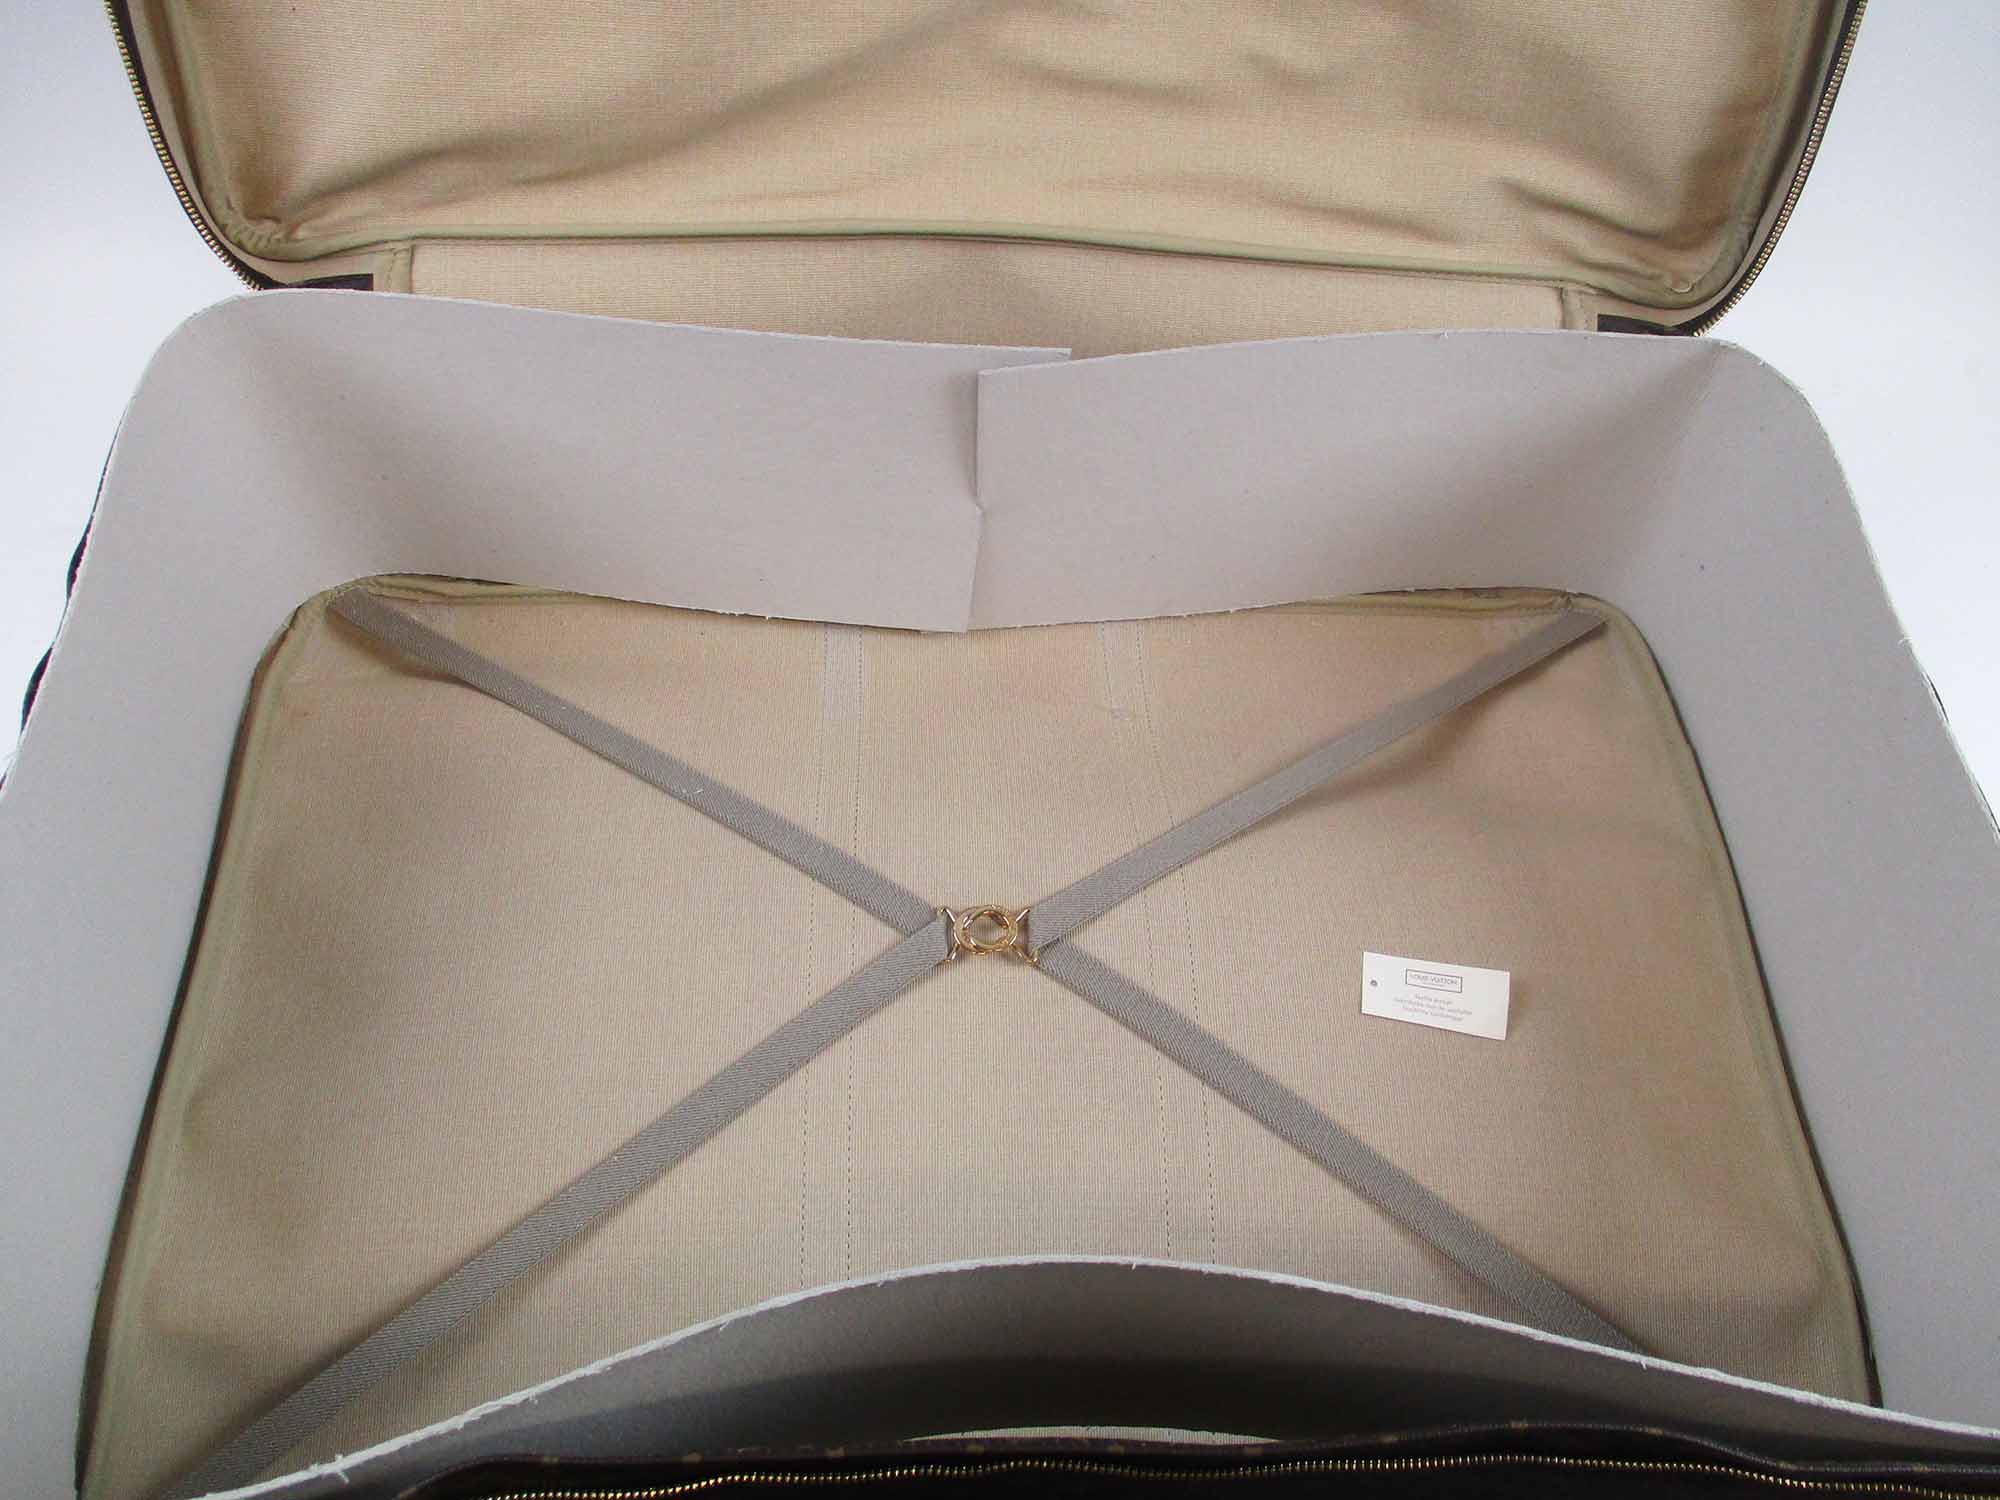 Louis Vuitton Vintage Monogram Sirius 70 Luggage Large Suitcase - SP0022